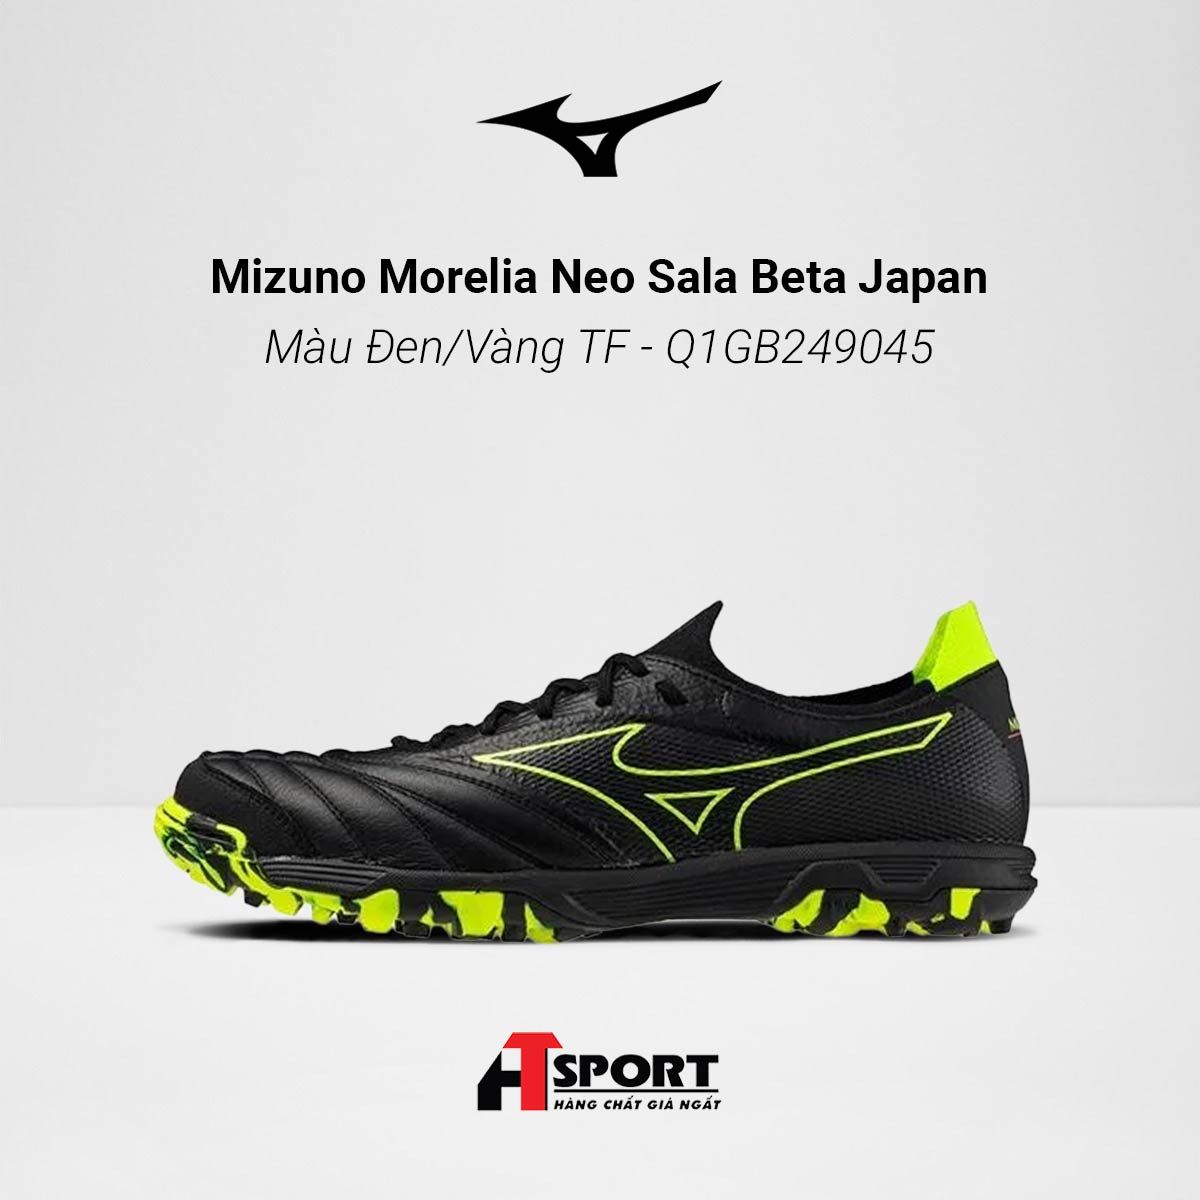  Mizuno Morelia Neo Sala Beta Japan Màu Đen/Vàng TF - Q1GB249045 